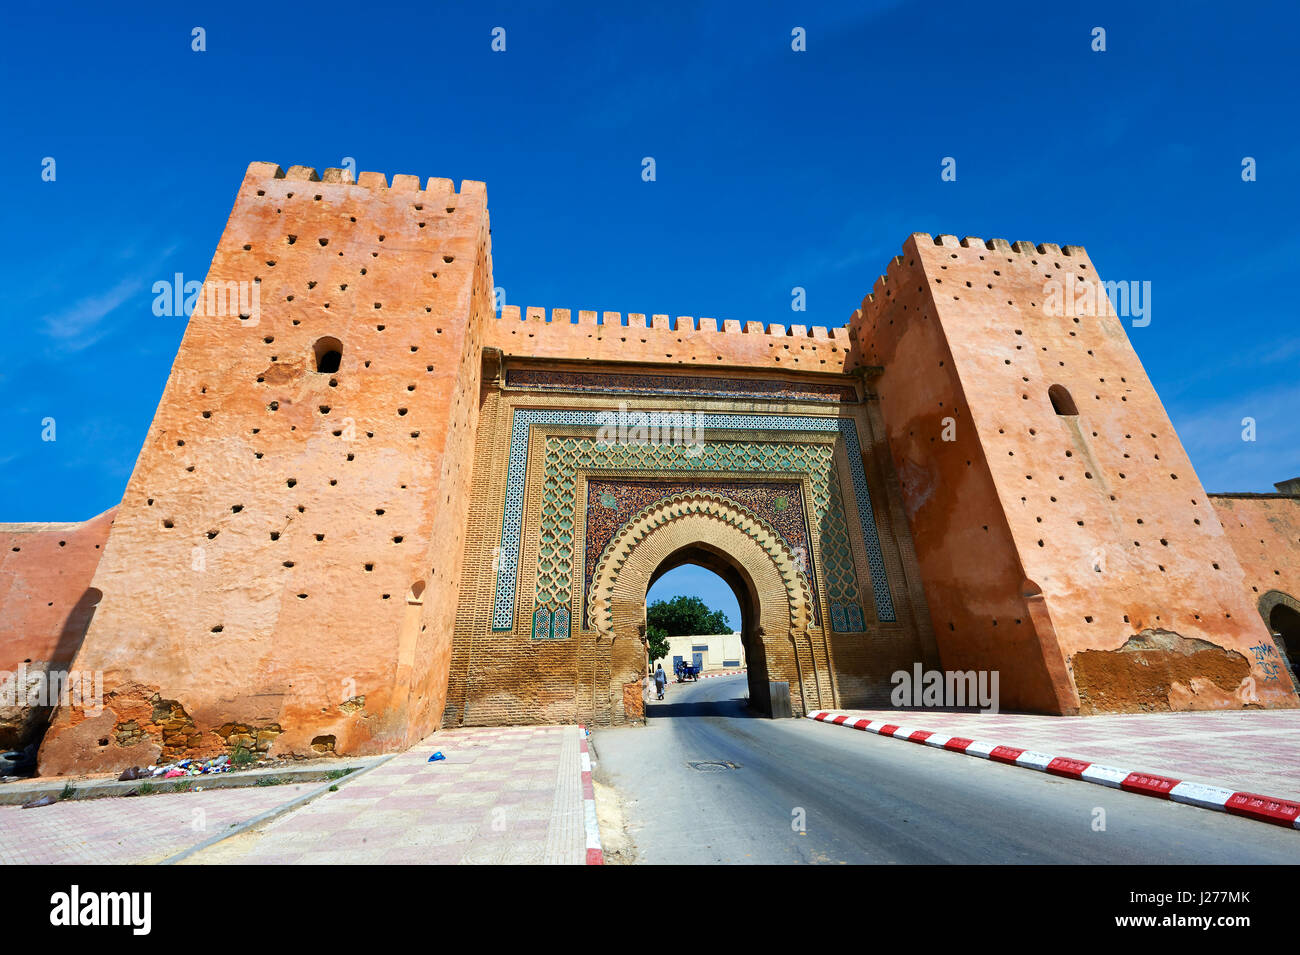 Arabesque mauresque porte dans les murs de la ville de Meknès avec mosaïques, zellij Maroc Banque D'Images